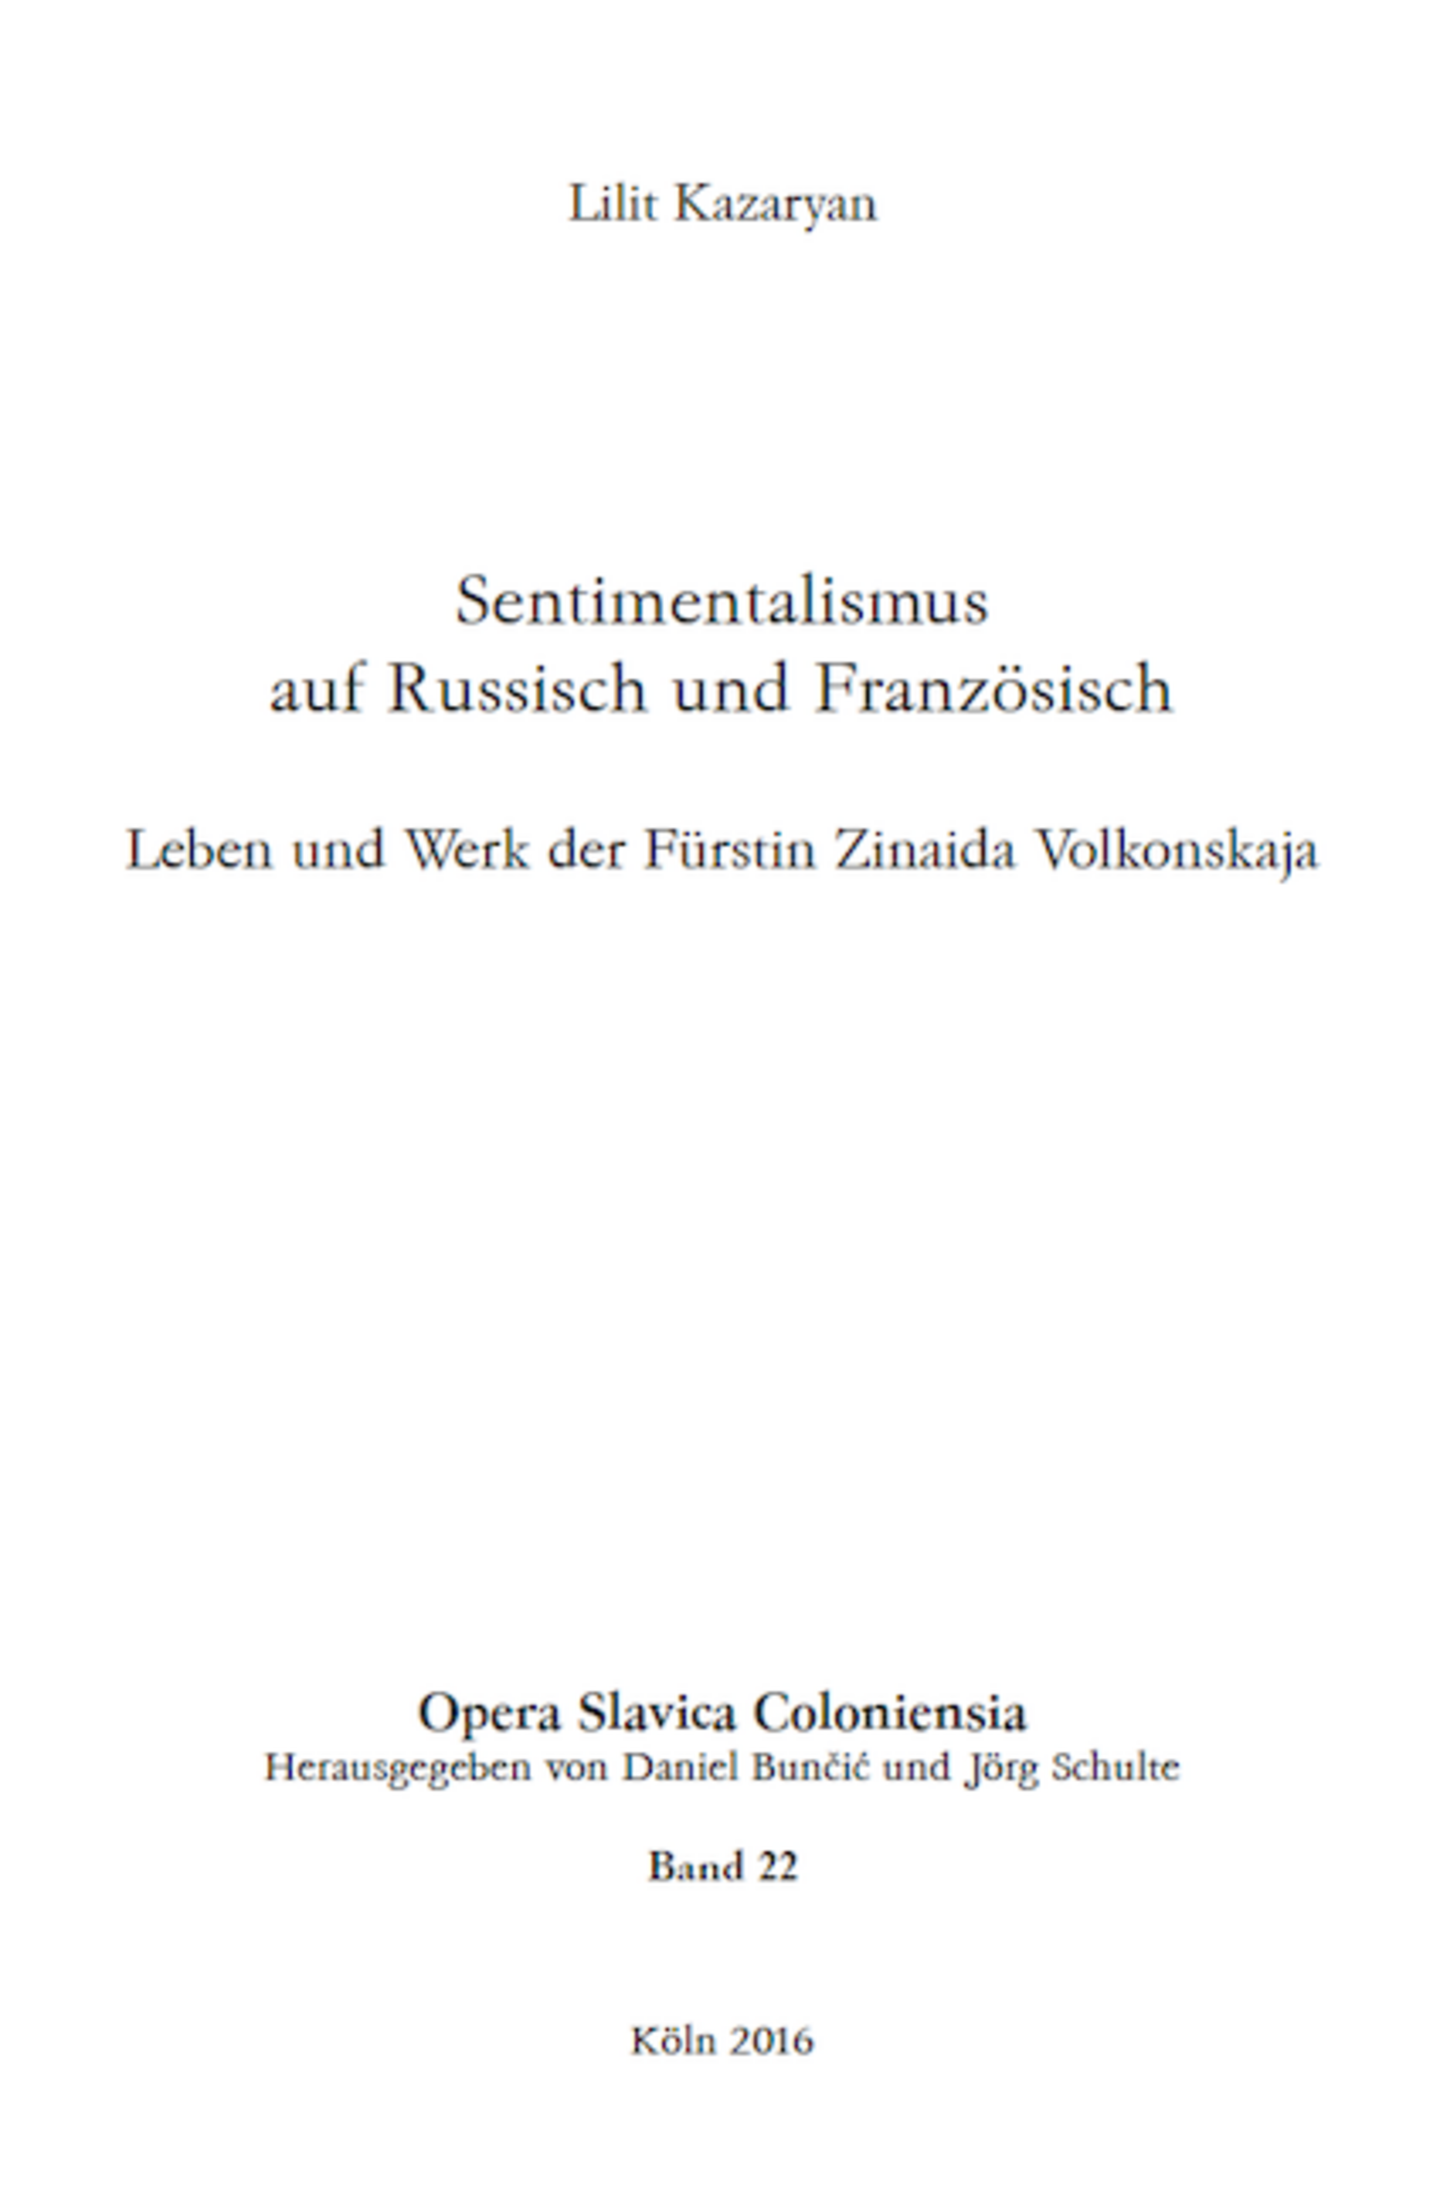 Opera Slavica Coloniensia, Bd. 22: Lilit Kazaryan (2016) Sentimentalismus auf Russisch und Französisch: Leben und Werk der Fürstin Zinaida Volkonskaja